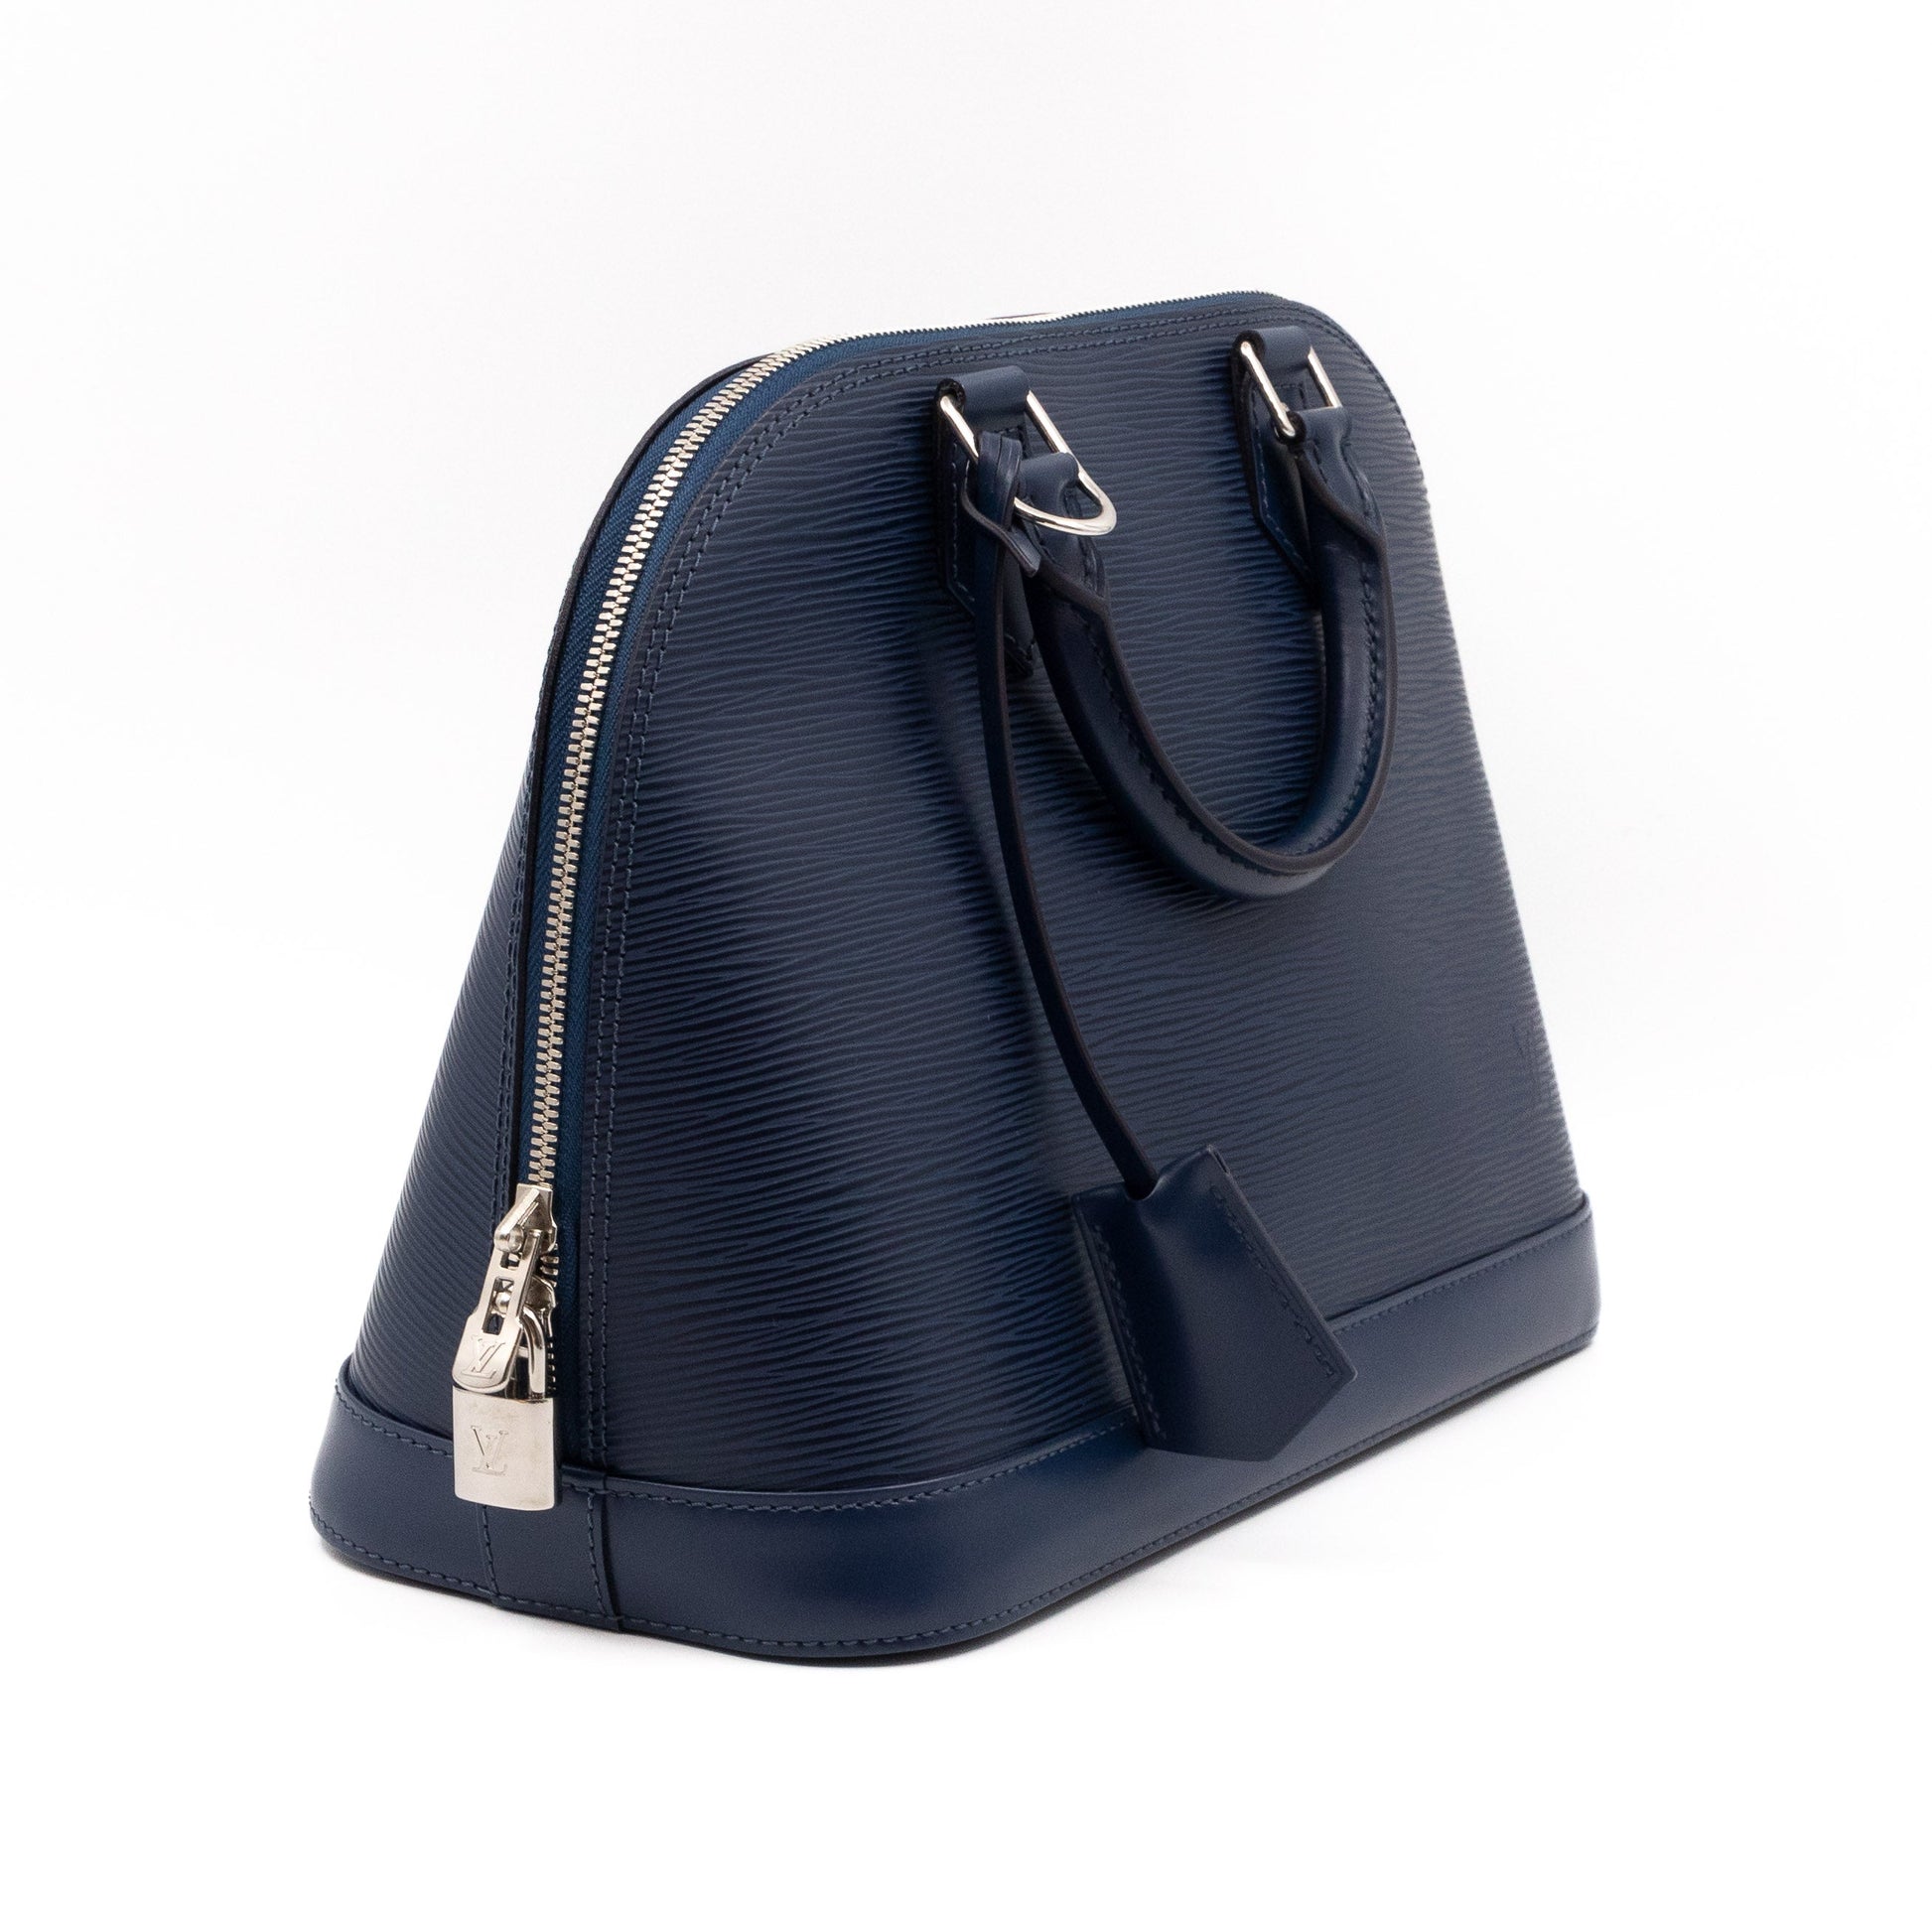 Tan Louis Vuitton Epi Alma PM Bag, RvceShops Revival